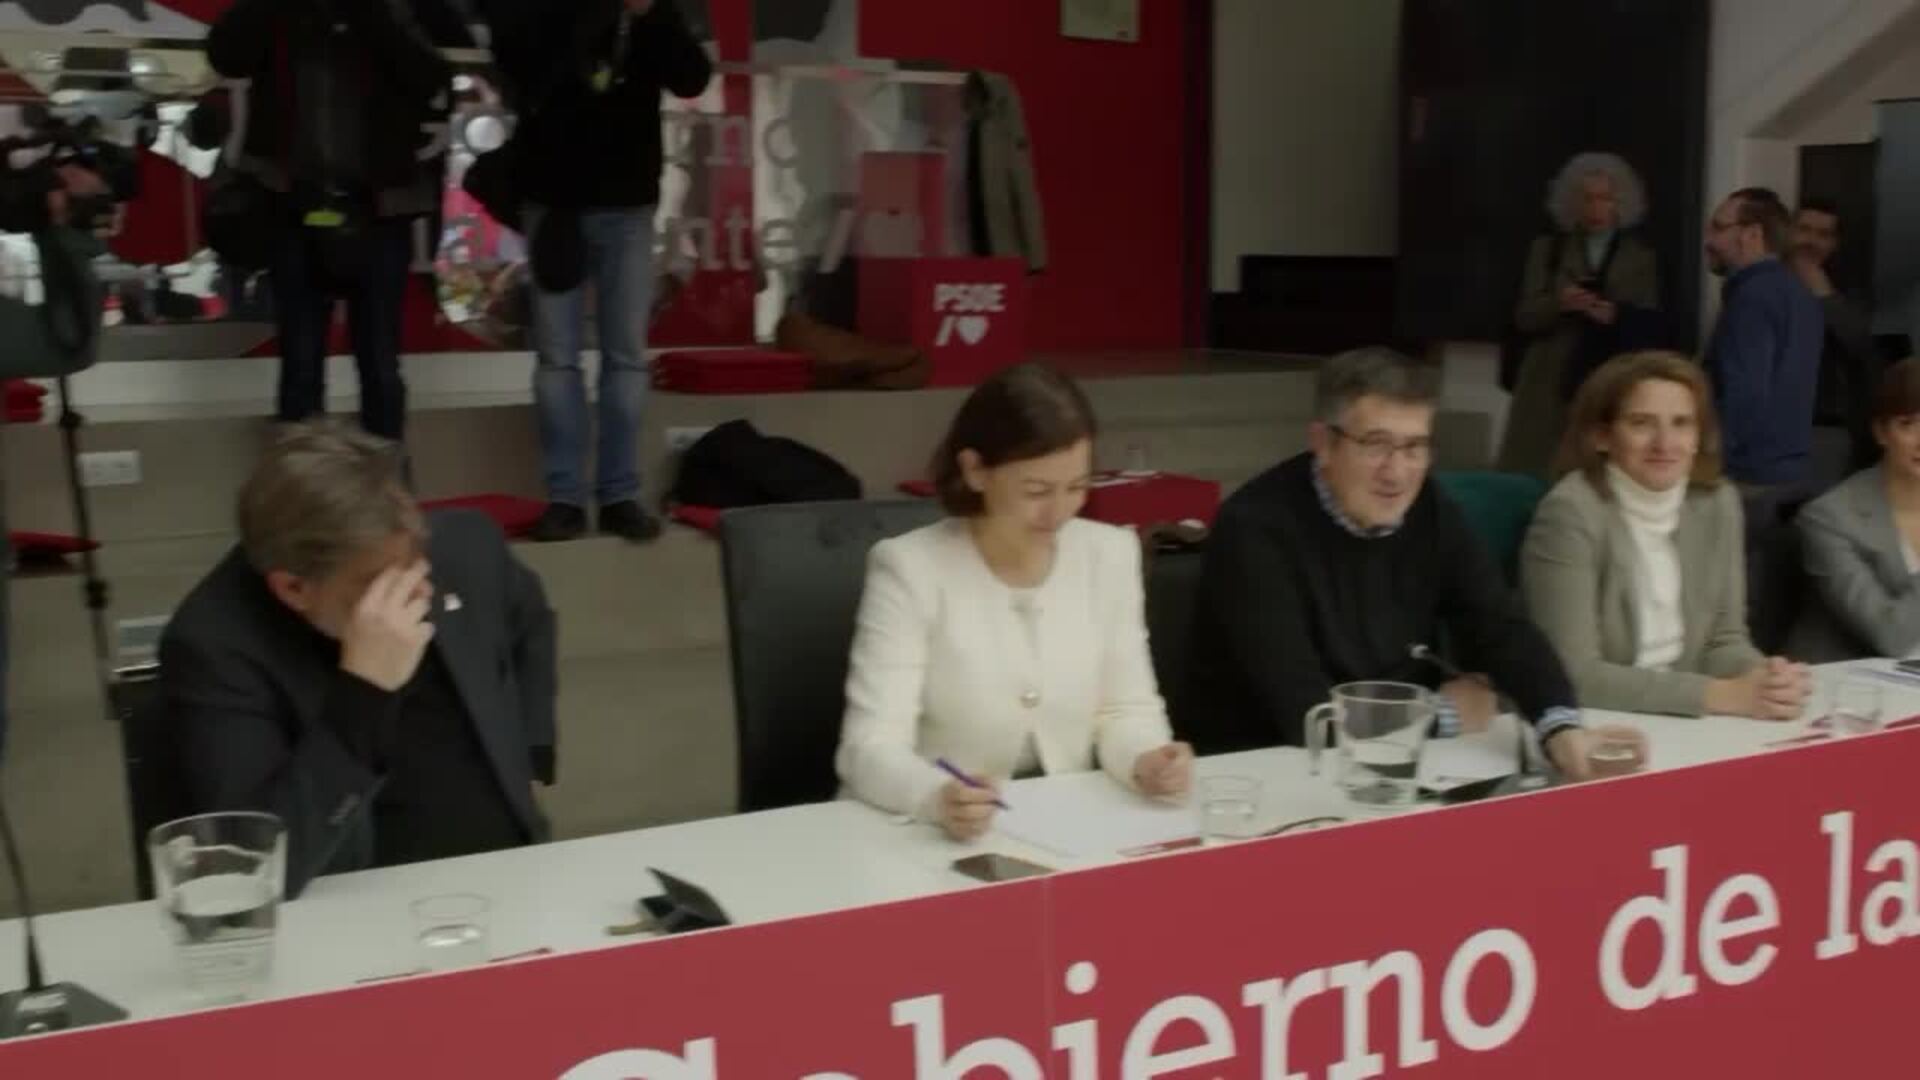 El PSOE expulsa a Nicolás Redondo por "reiterado menosprecio" a las siglas del partido